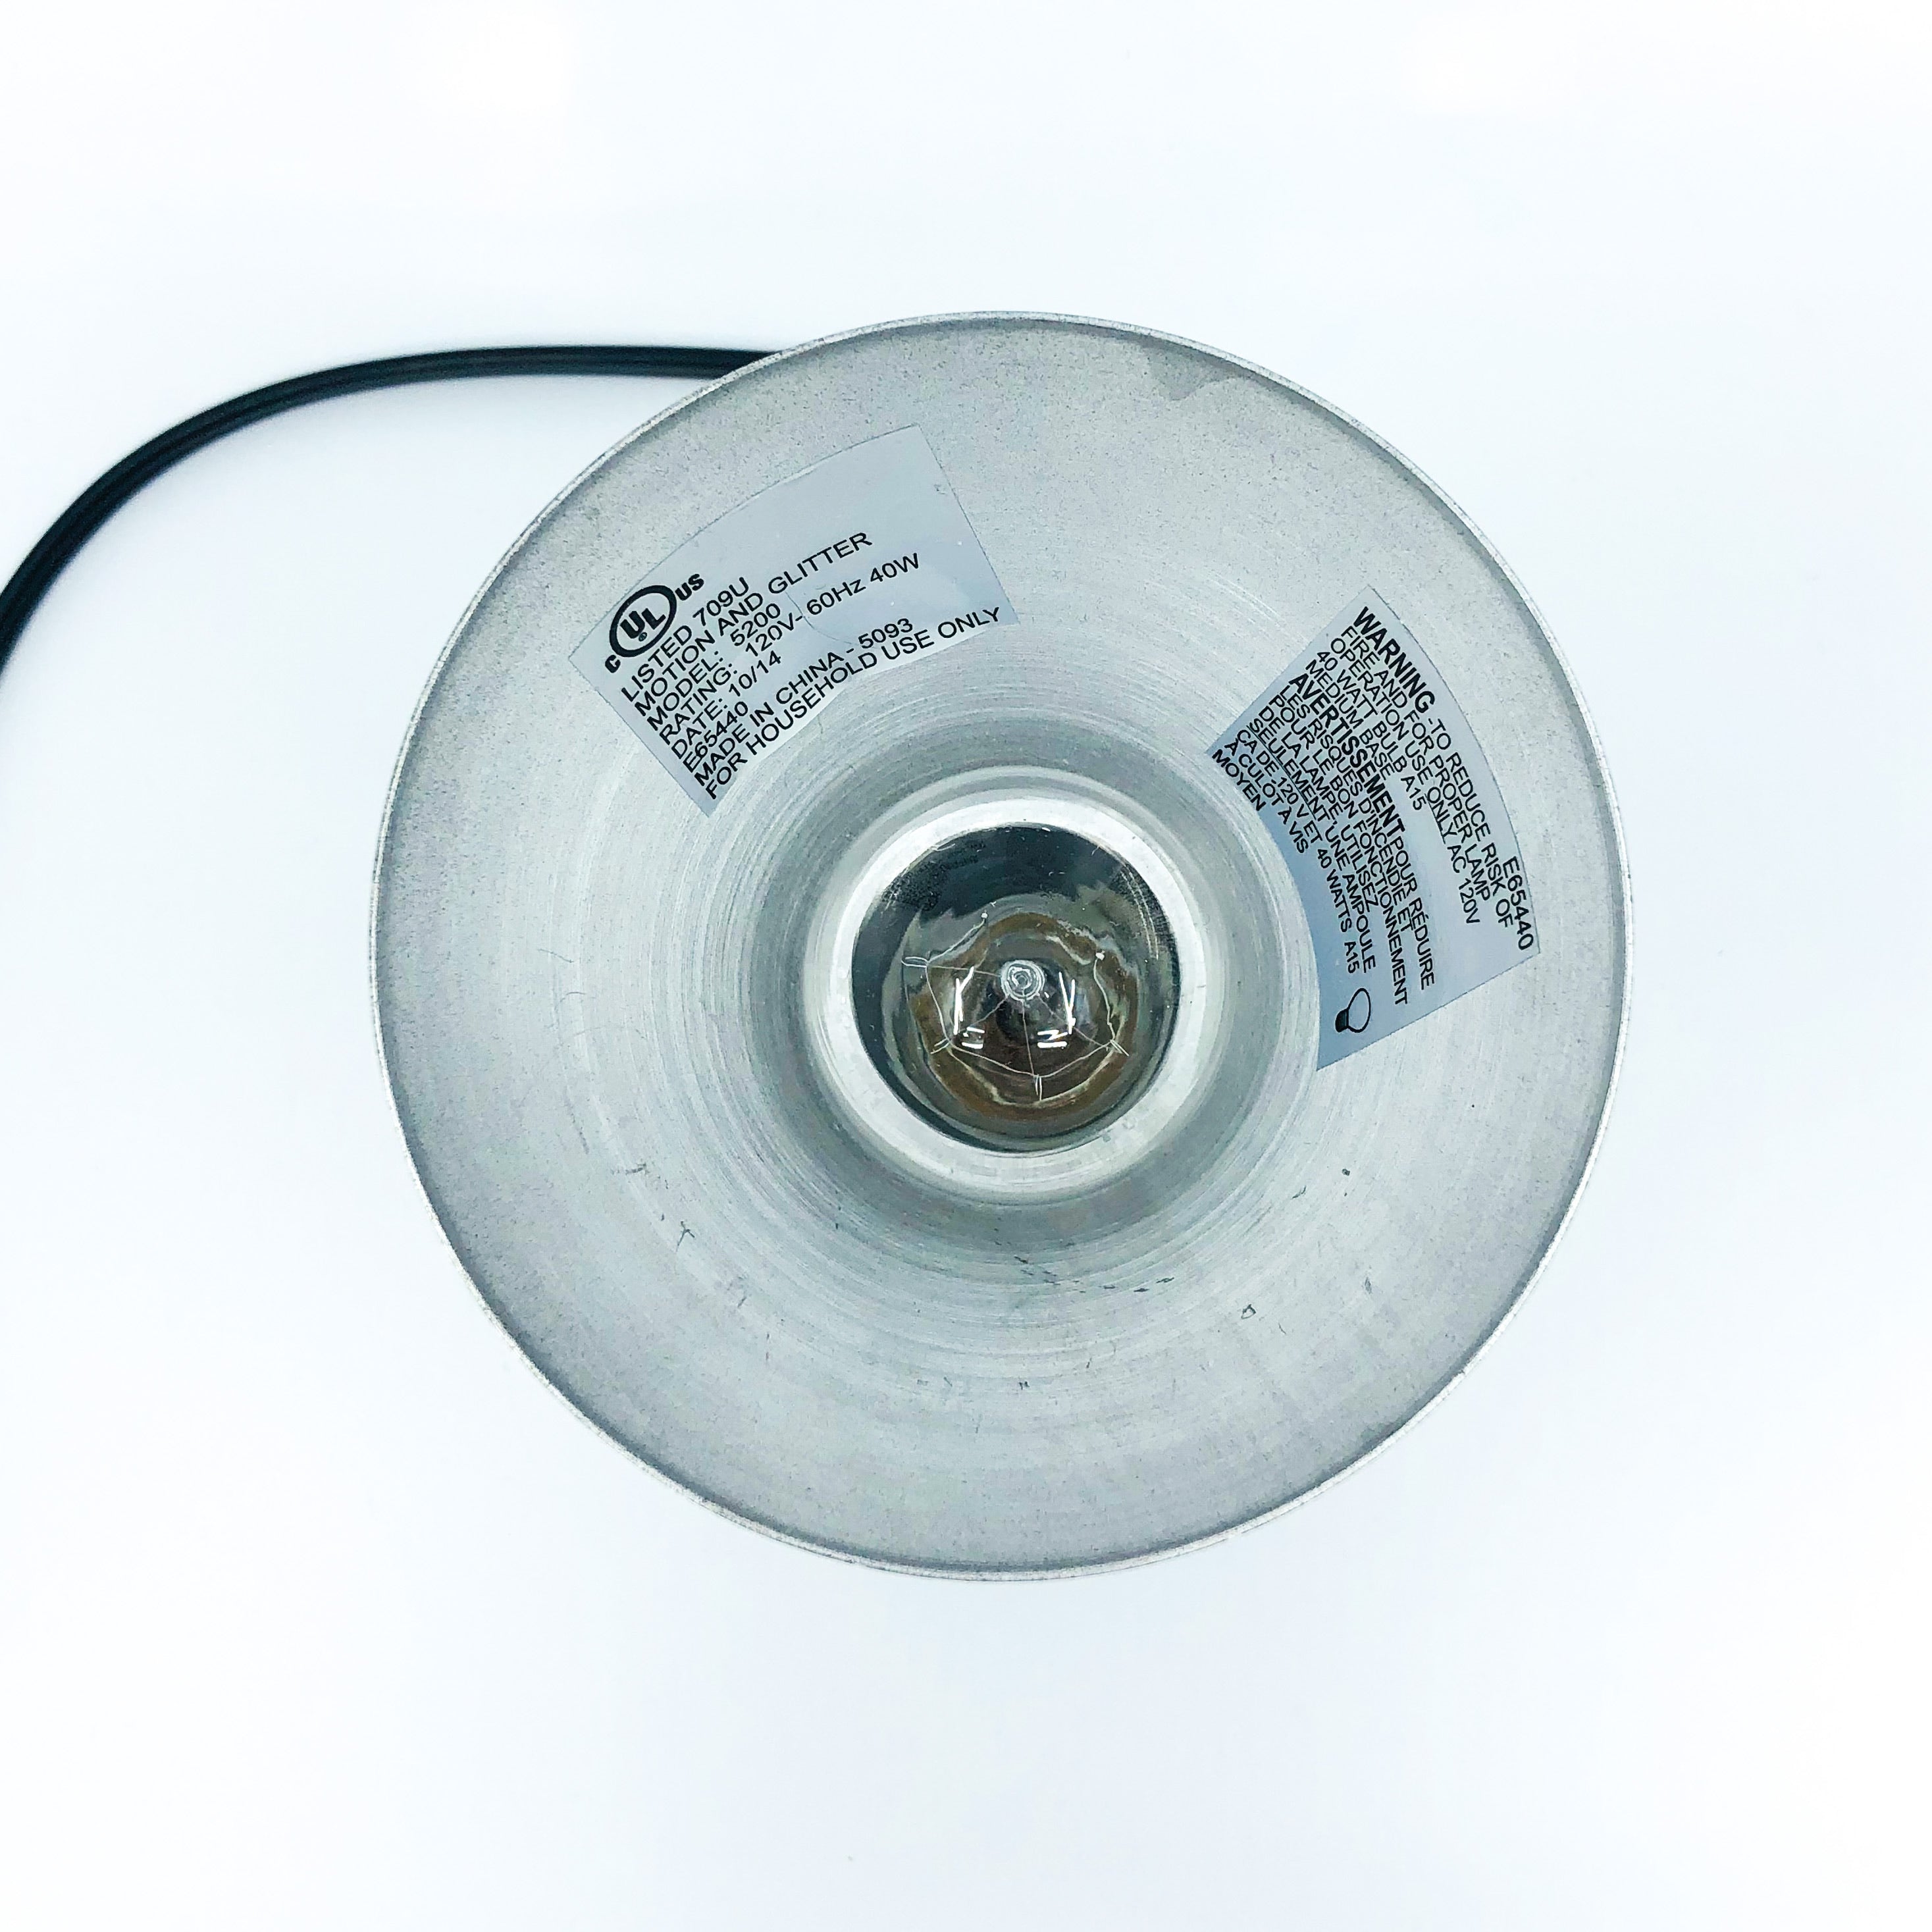 Contemporary Matte Black Bowtie Cone Lamp